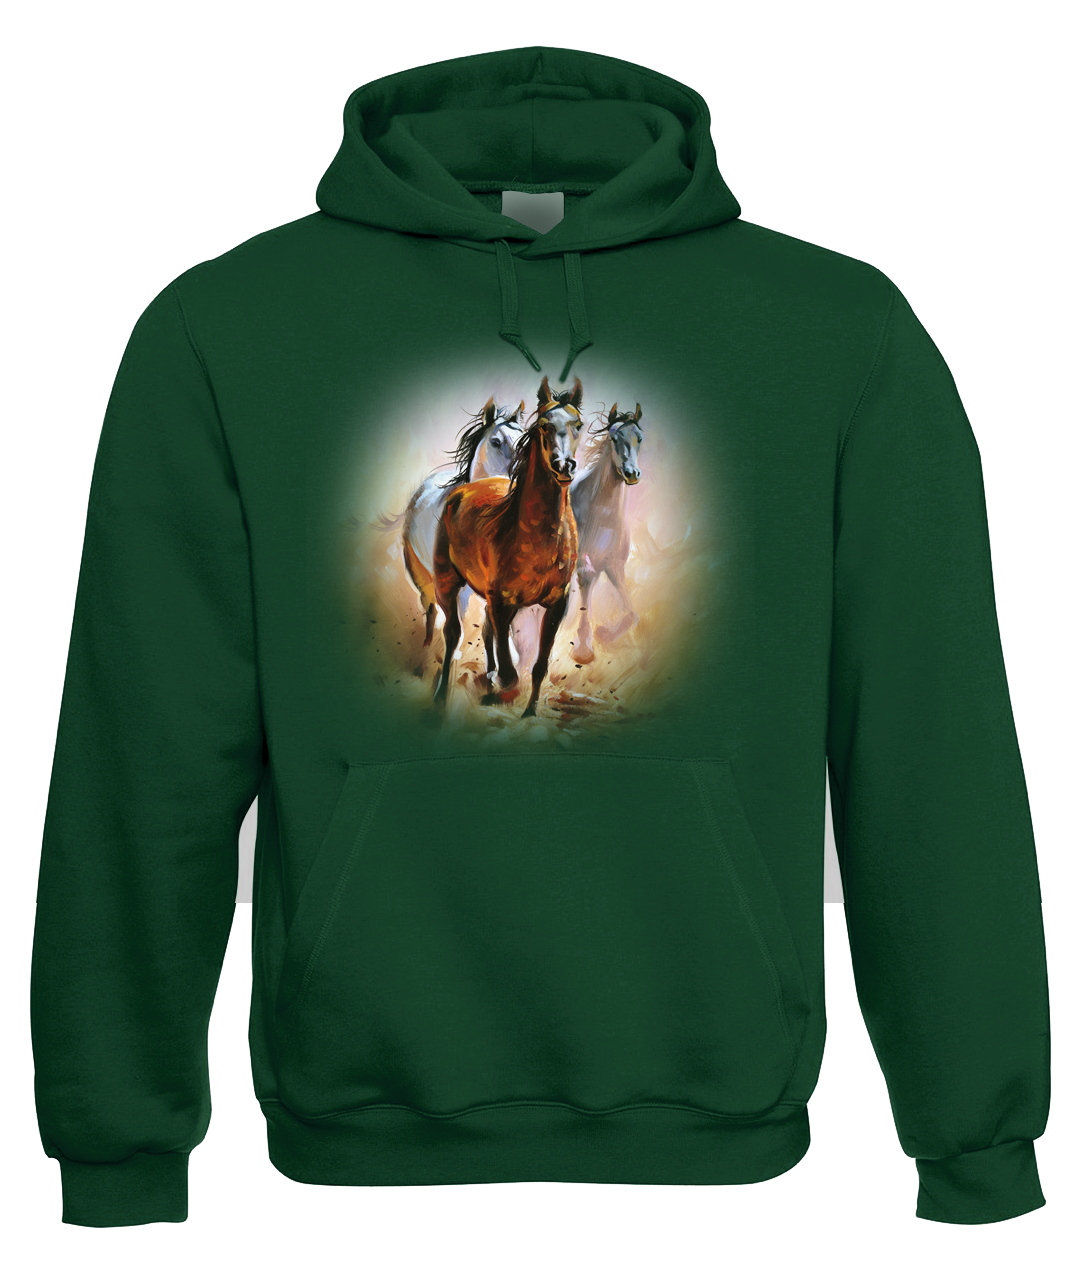 Mikina s koněm - Malované koně Velikost: S, Barva: Zelená lahvová